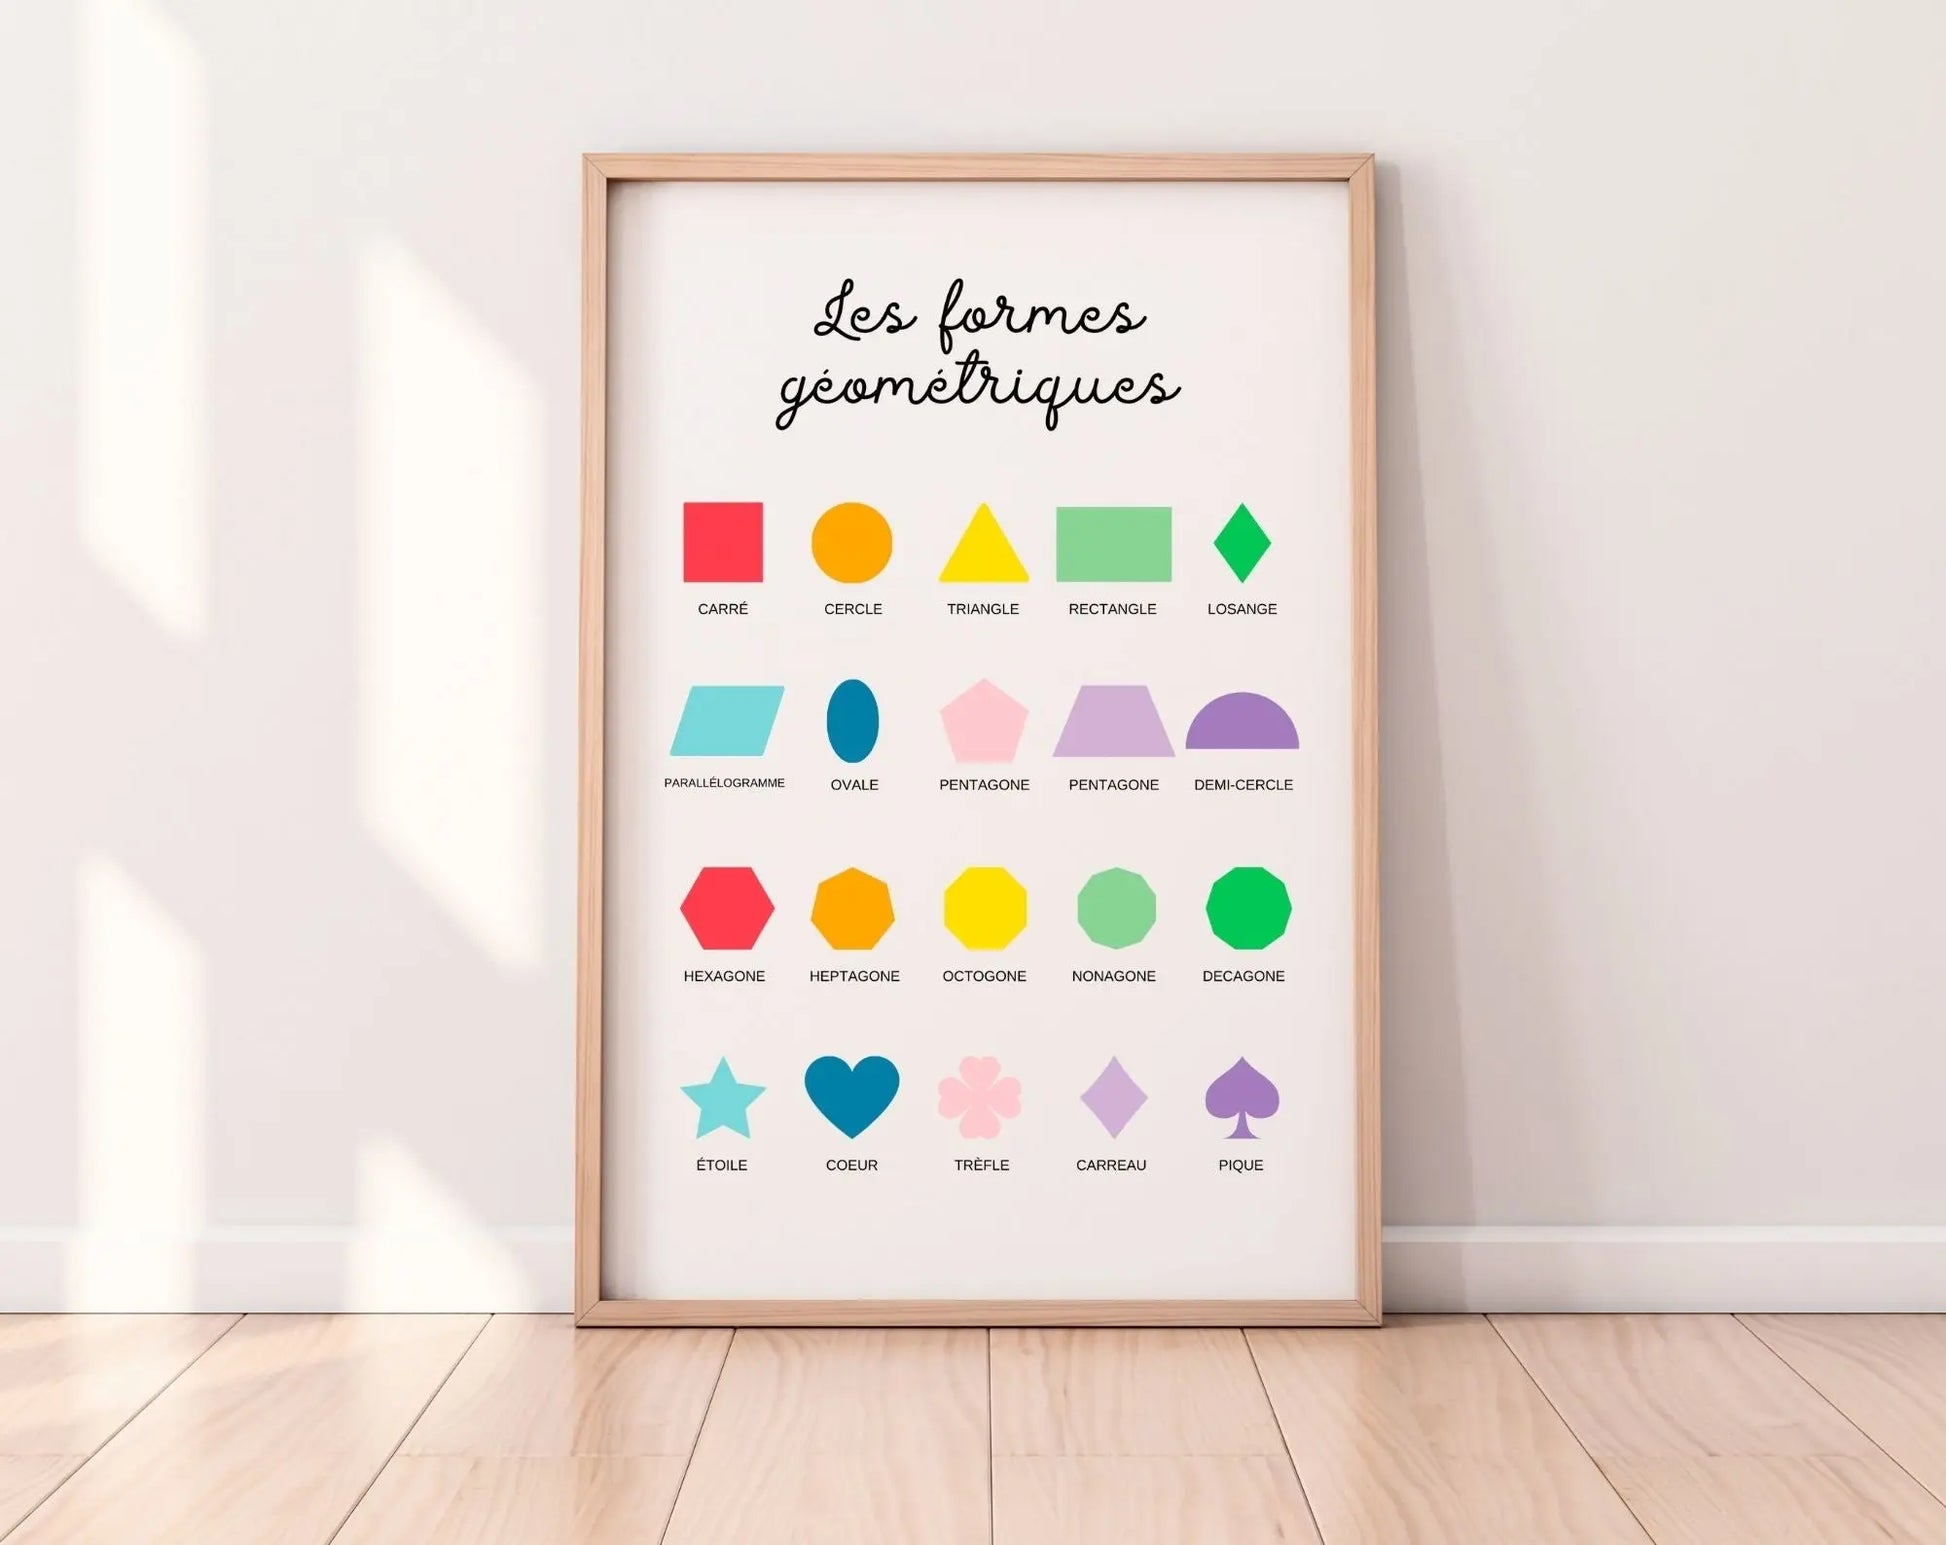 Affiche Les formes géométriques - Poster éducatif Montessori FLTMfrance